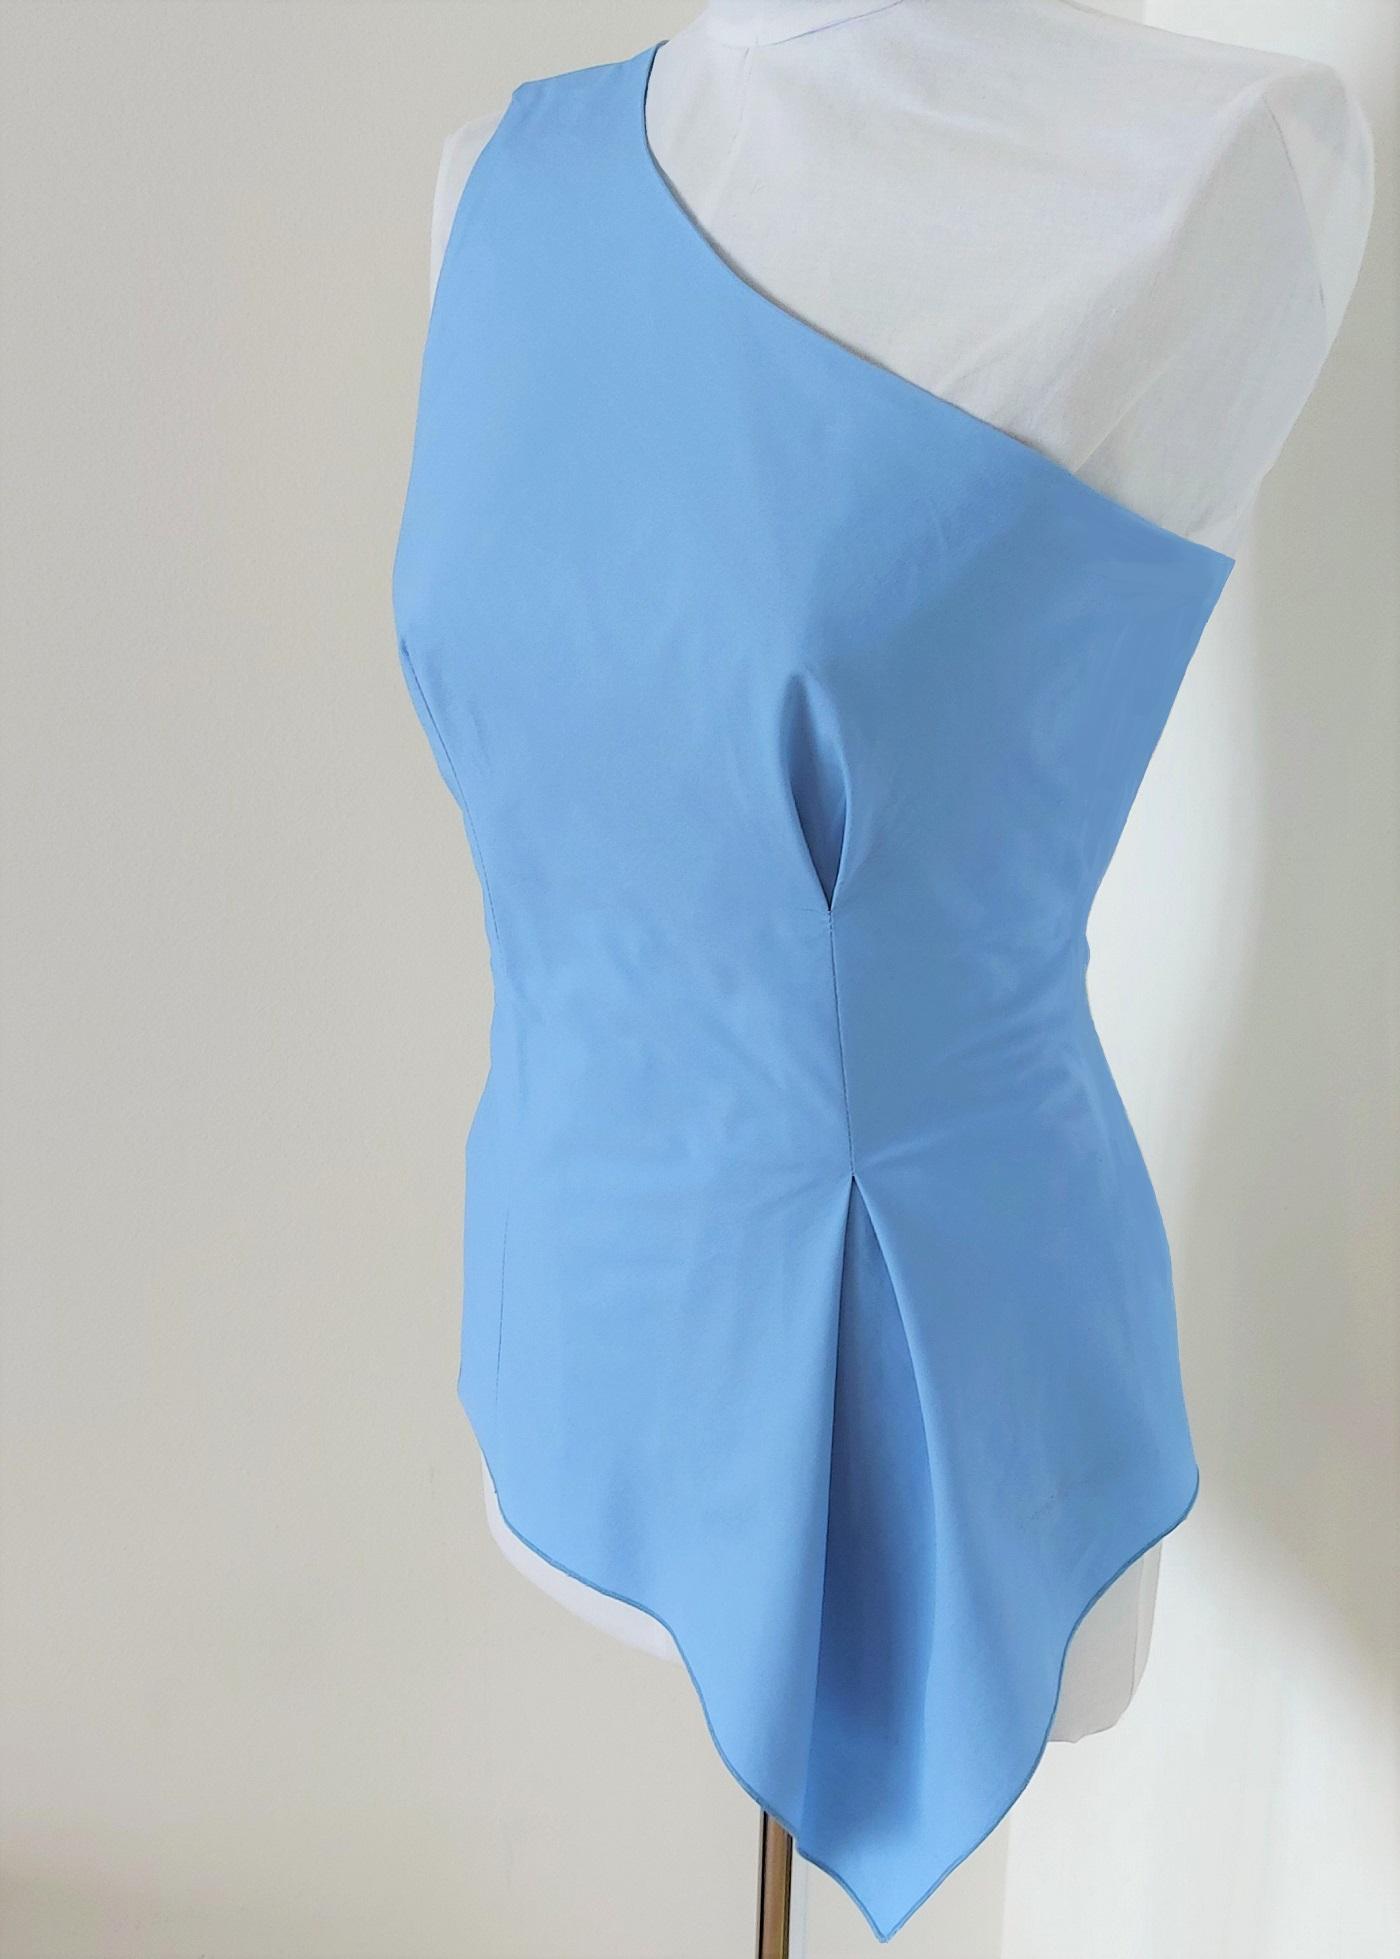 Selected image for PAMUKLIK Ženska asimetrična bluza na jedno rame sa otvorenom faltom STELLA svetloplava